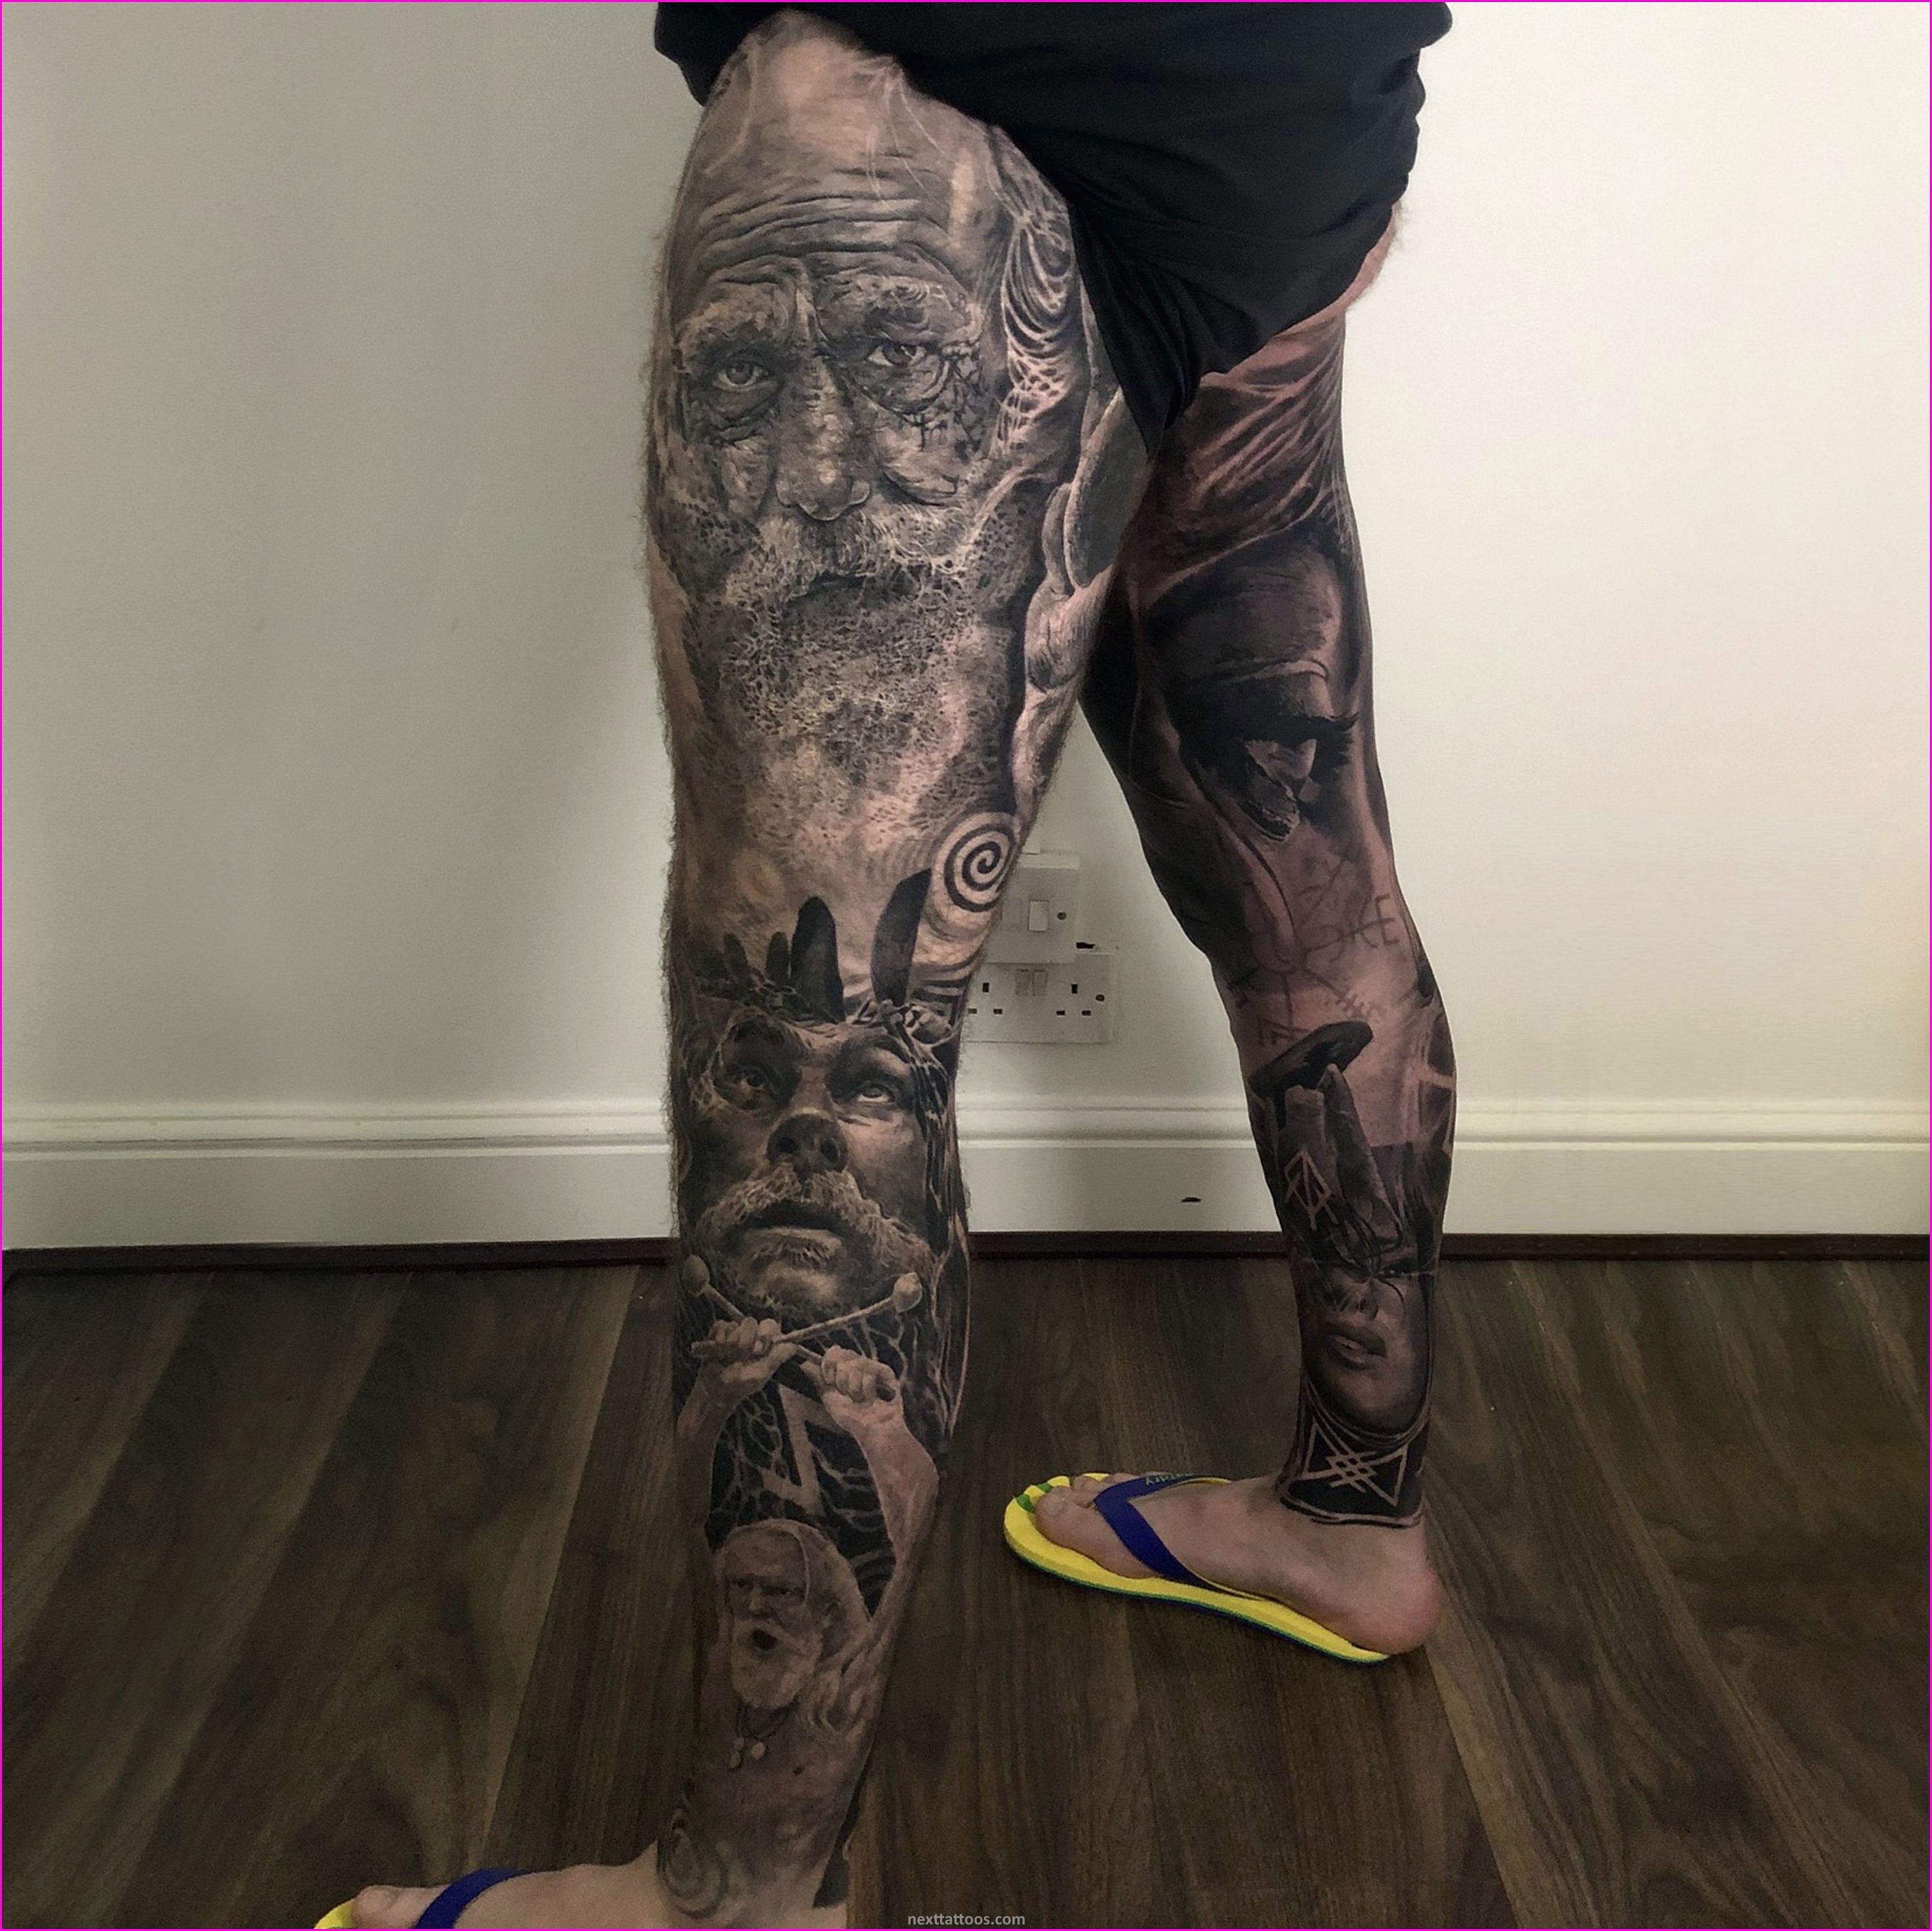 Leg Tattoos For Men and Women